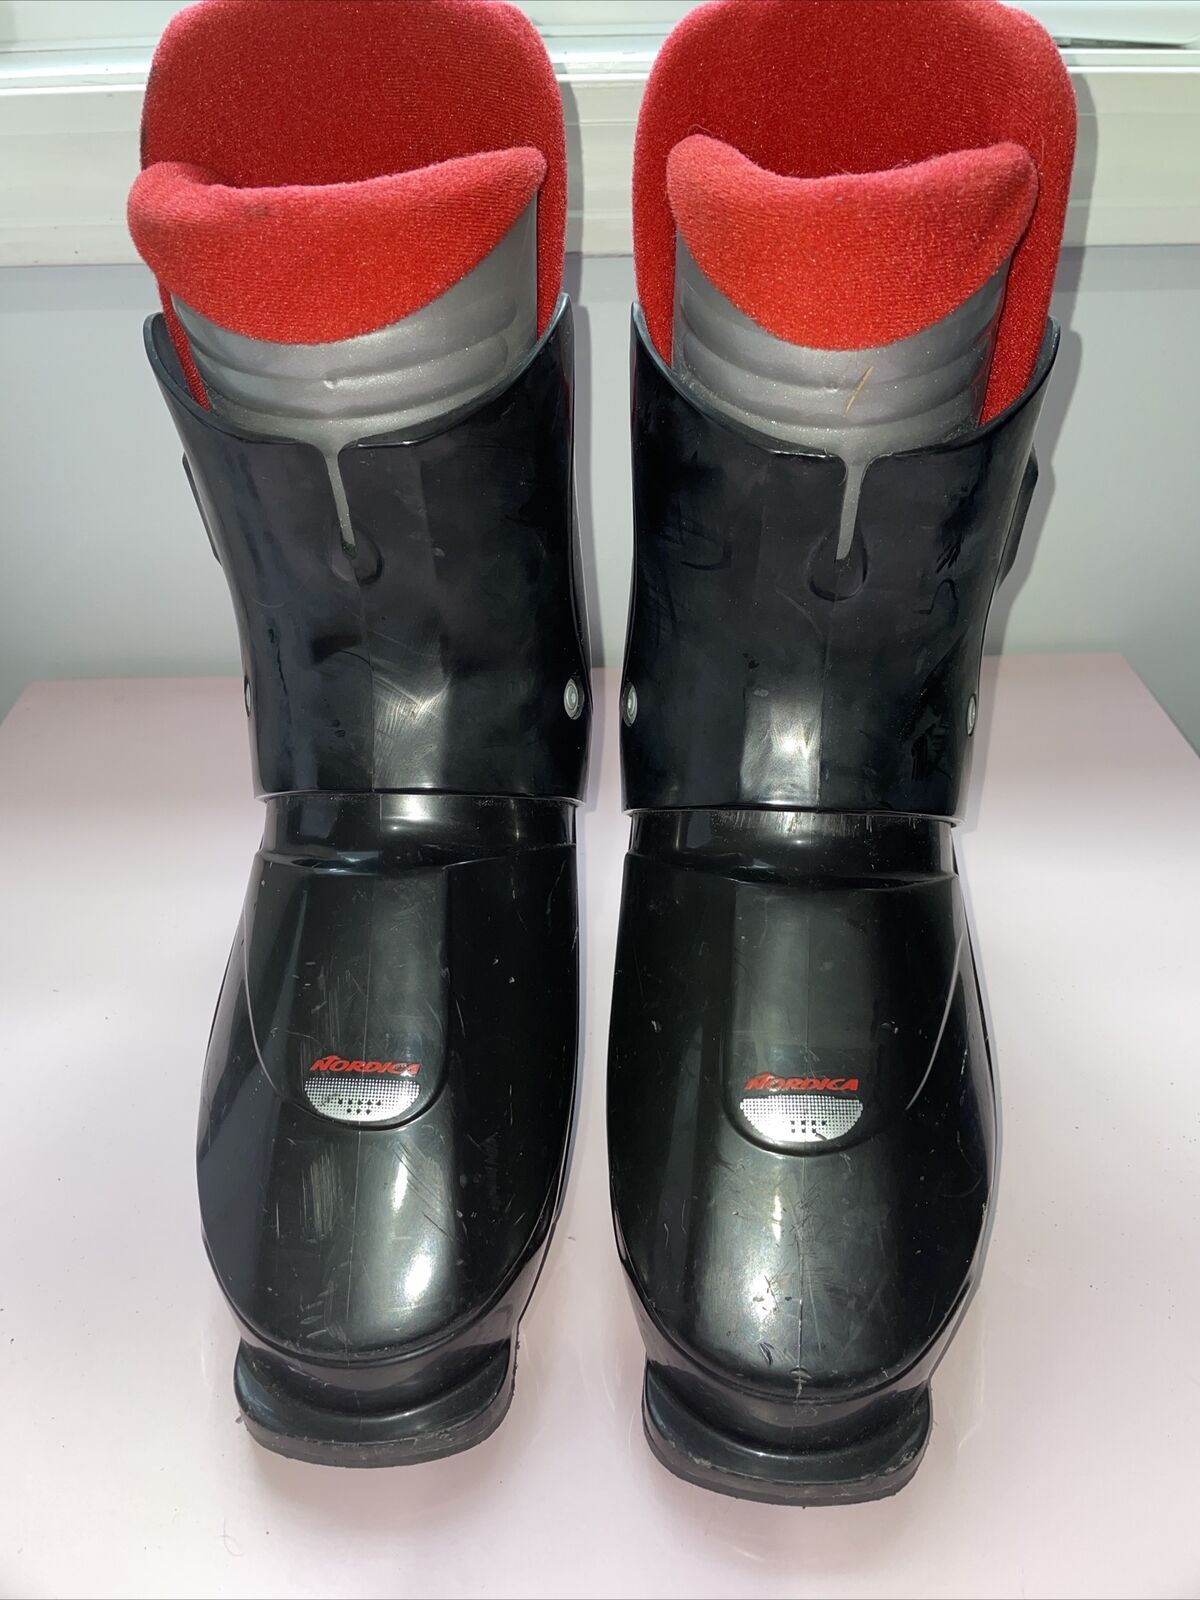 Nordica Super 0.1 Black/red Size 25.0 - 25.5 (mondo) Downhill Ski Boots